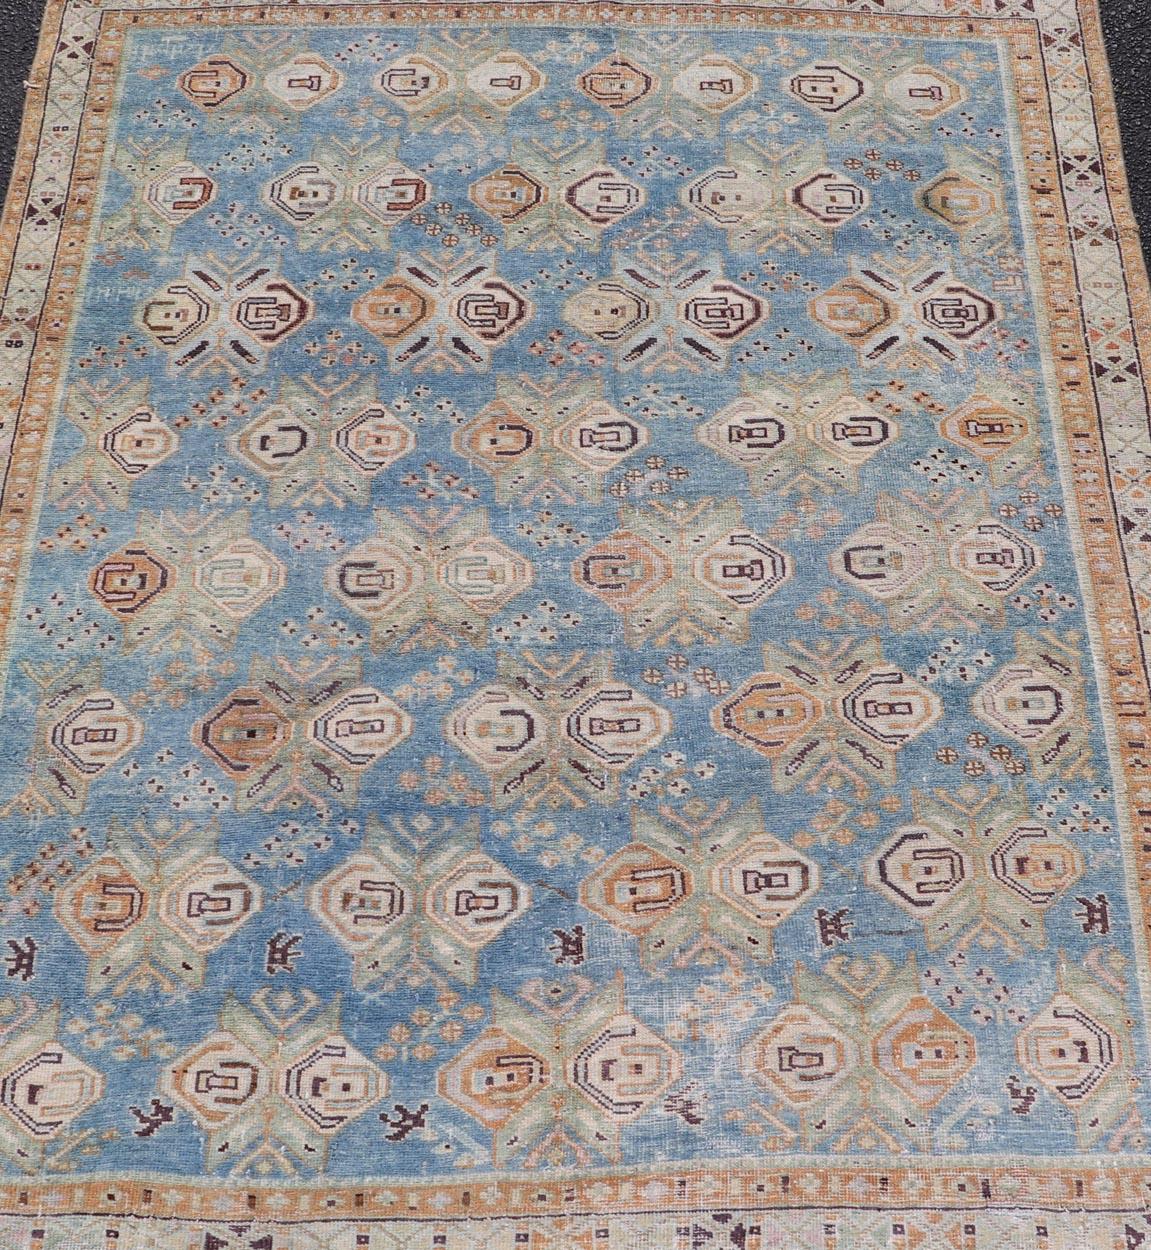 Tapis persan ancien Afshar à fond bleu clair avec motifs floraux tribaux. Keivan Woven Arts / tapis EMB-22196-15093, origine/Iran début du XXe siècle. Afshar
Mesures : 4'1 x 5'0 
Tissé à la main par un artisan de la tribu des Afshar, dans le sud-est